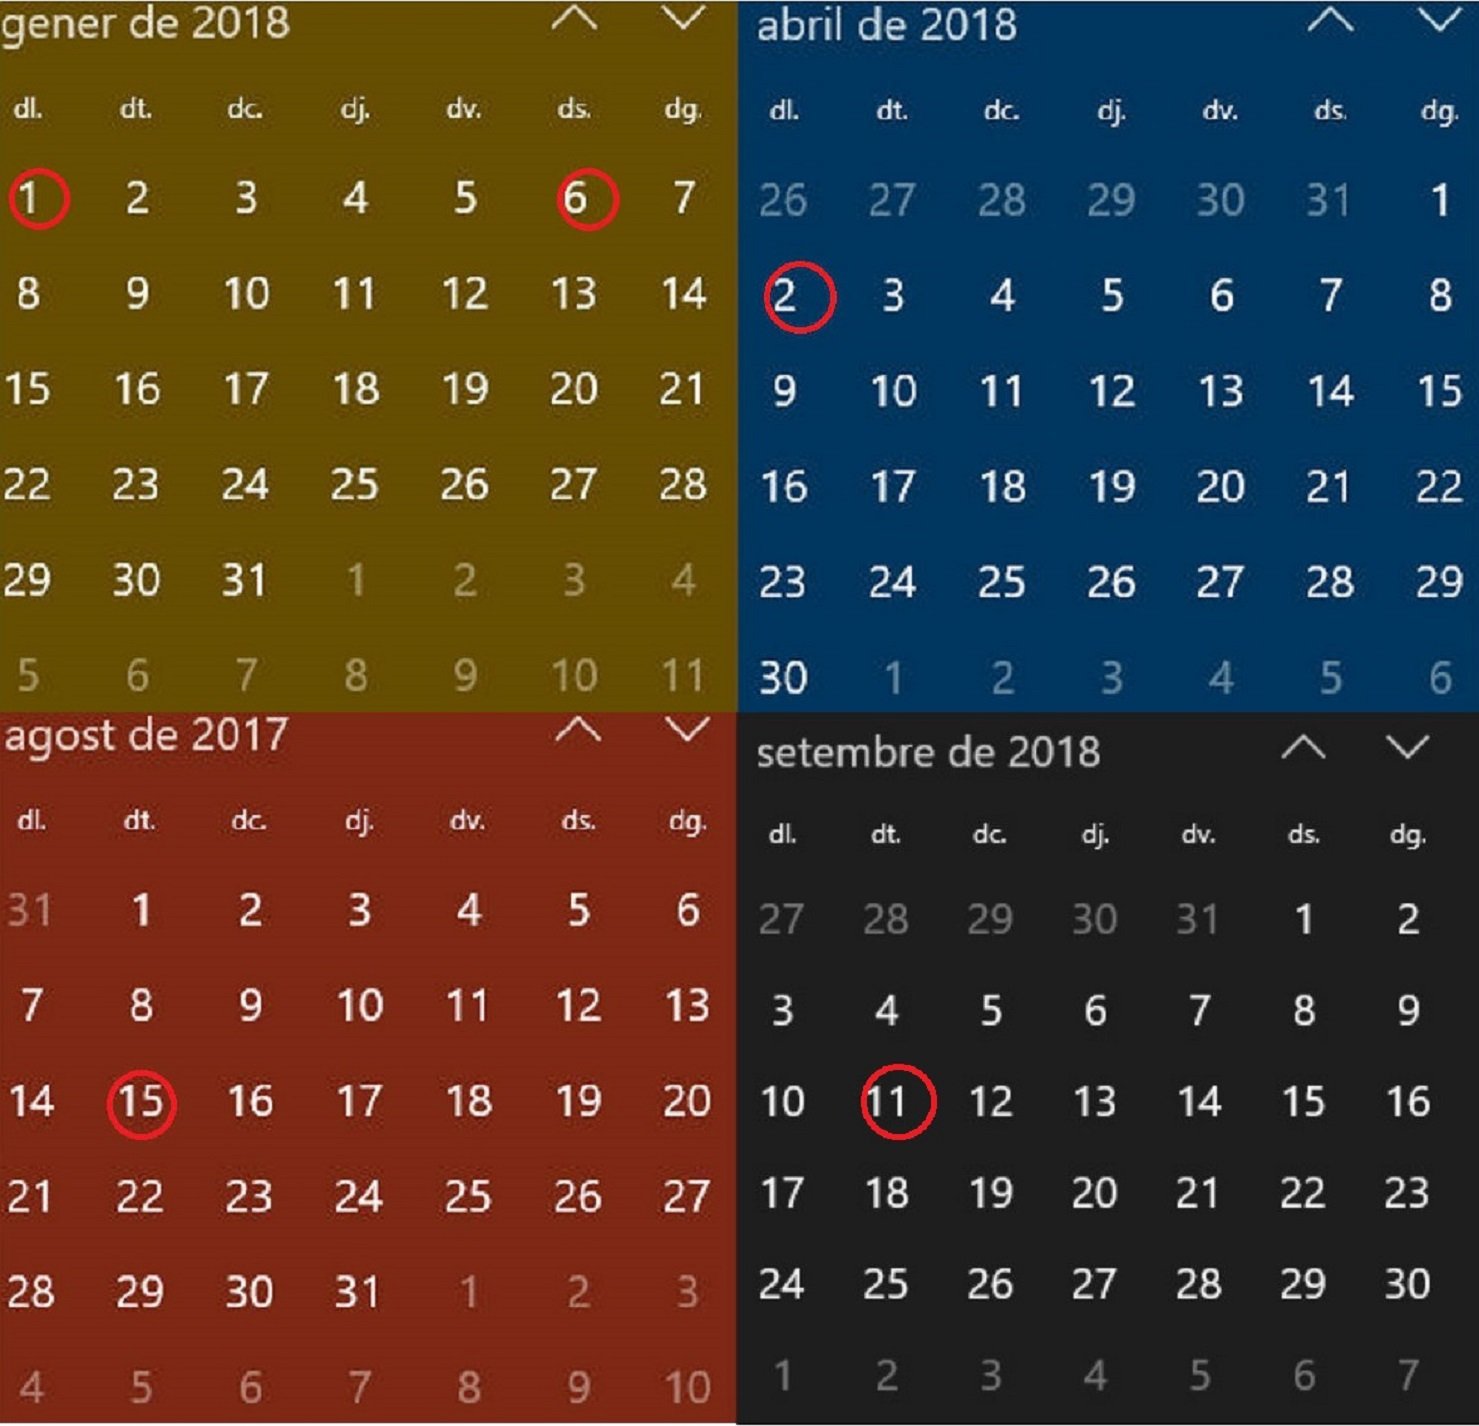 Aquest és el calendari de festes laborals a Catalunya per al 2018